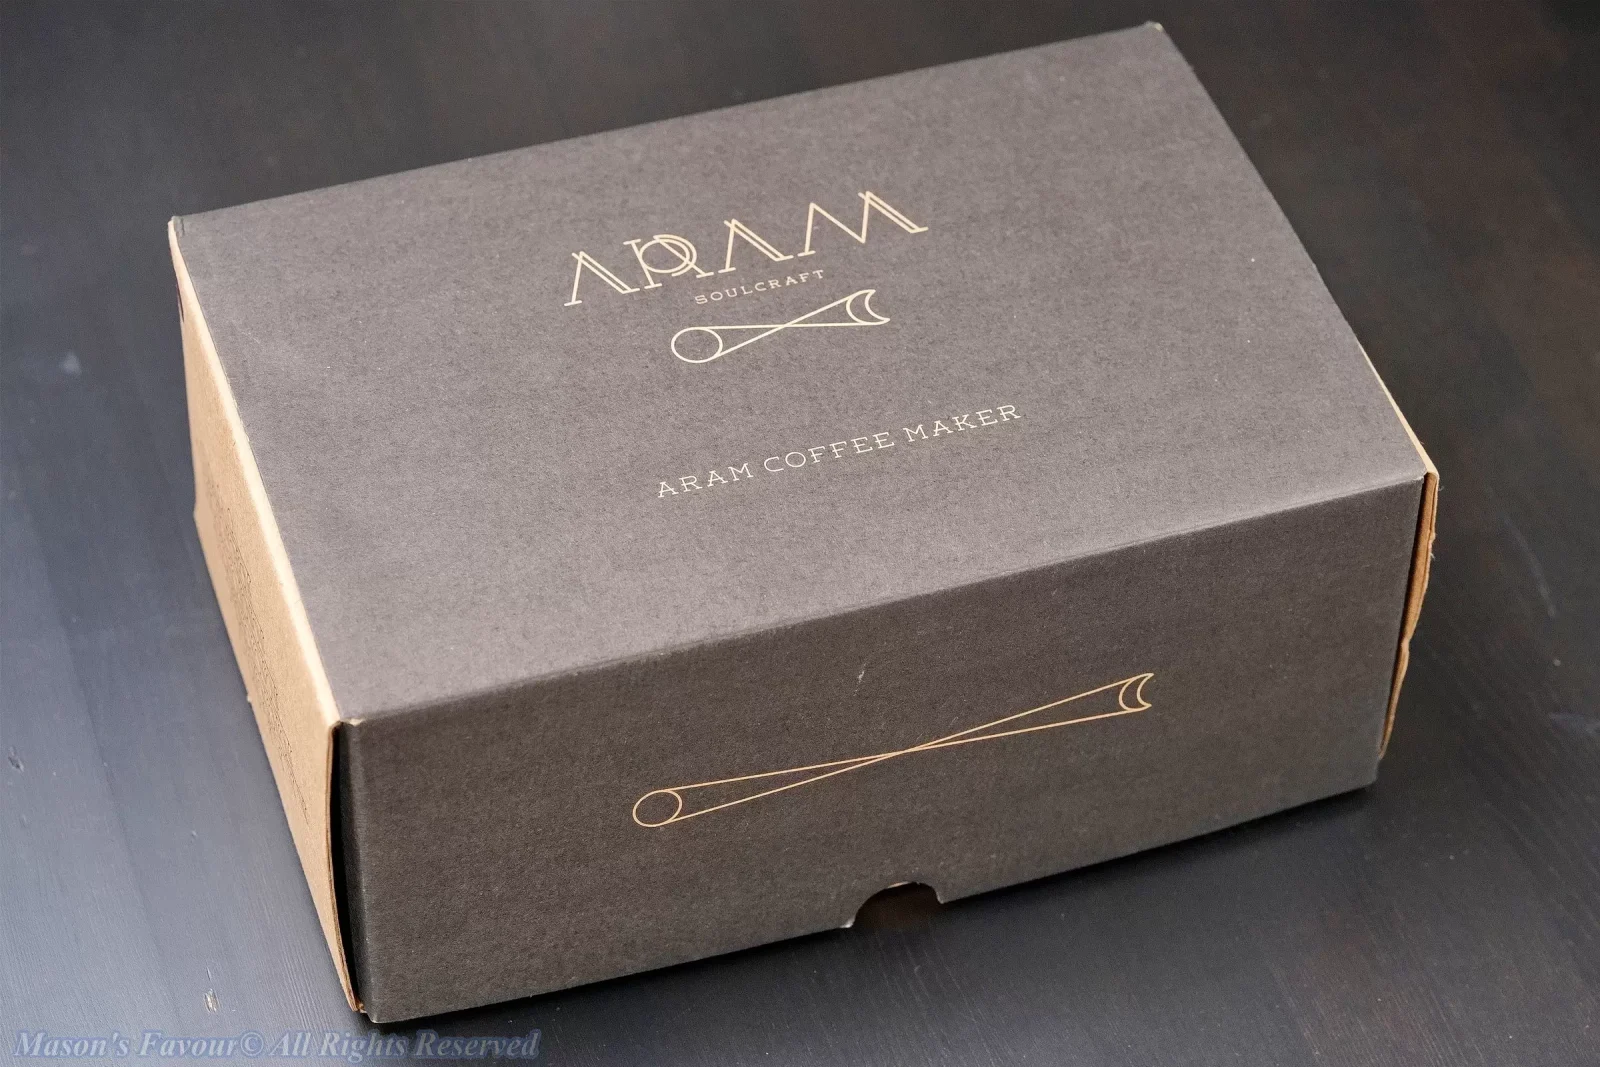 Aram Espresso Maker, Aram Coffee Maker - Box